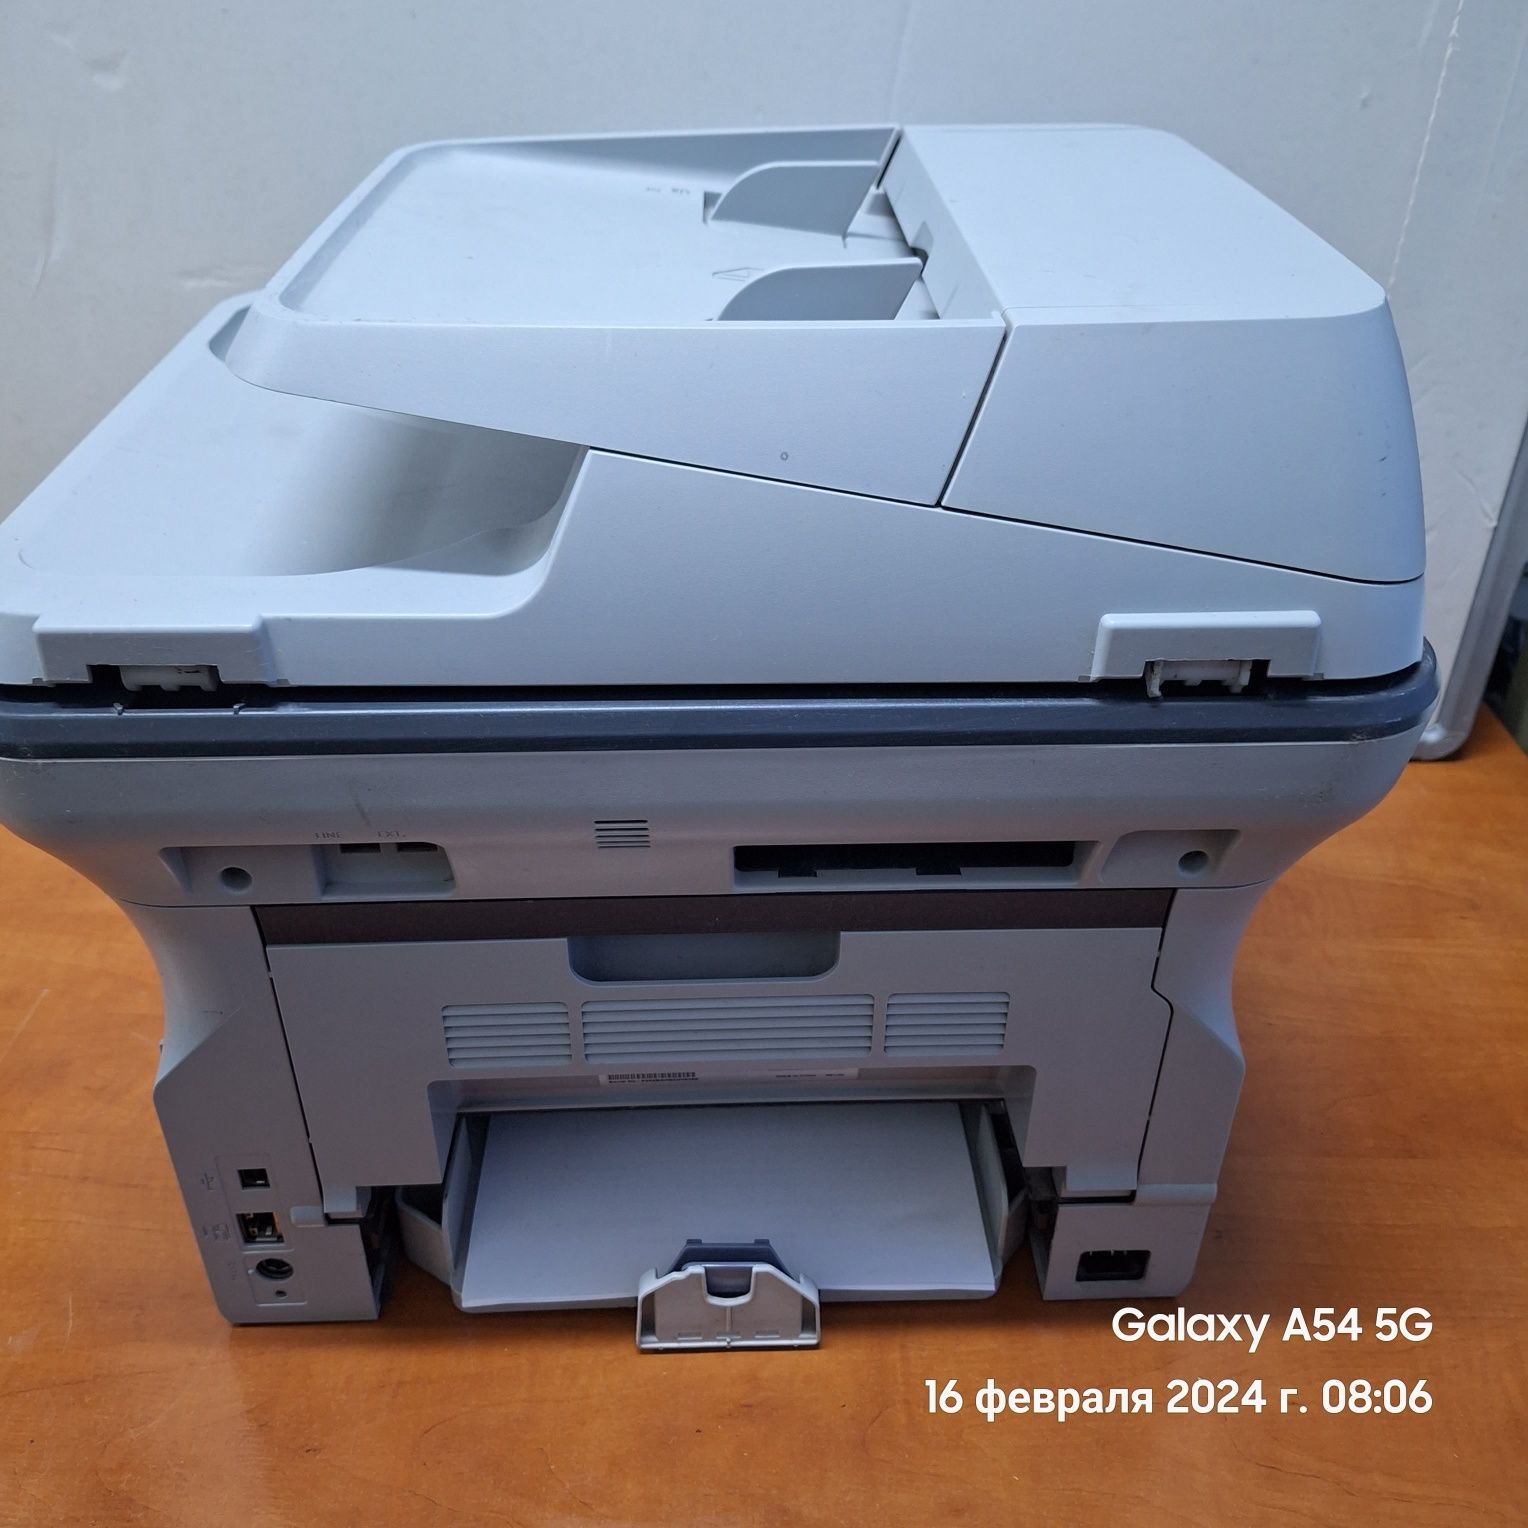 СРОЧНО:Продам 3В1 принтер/копир/сканер